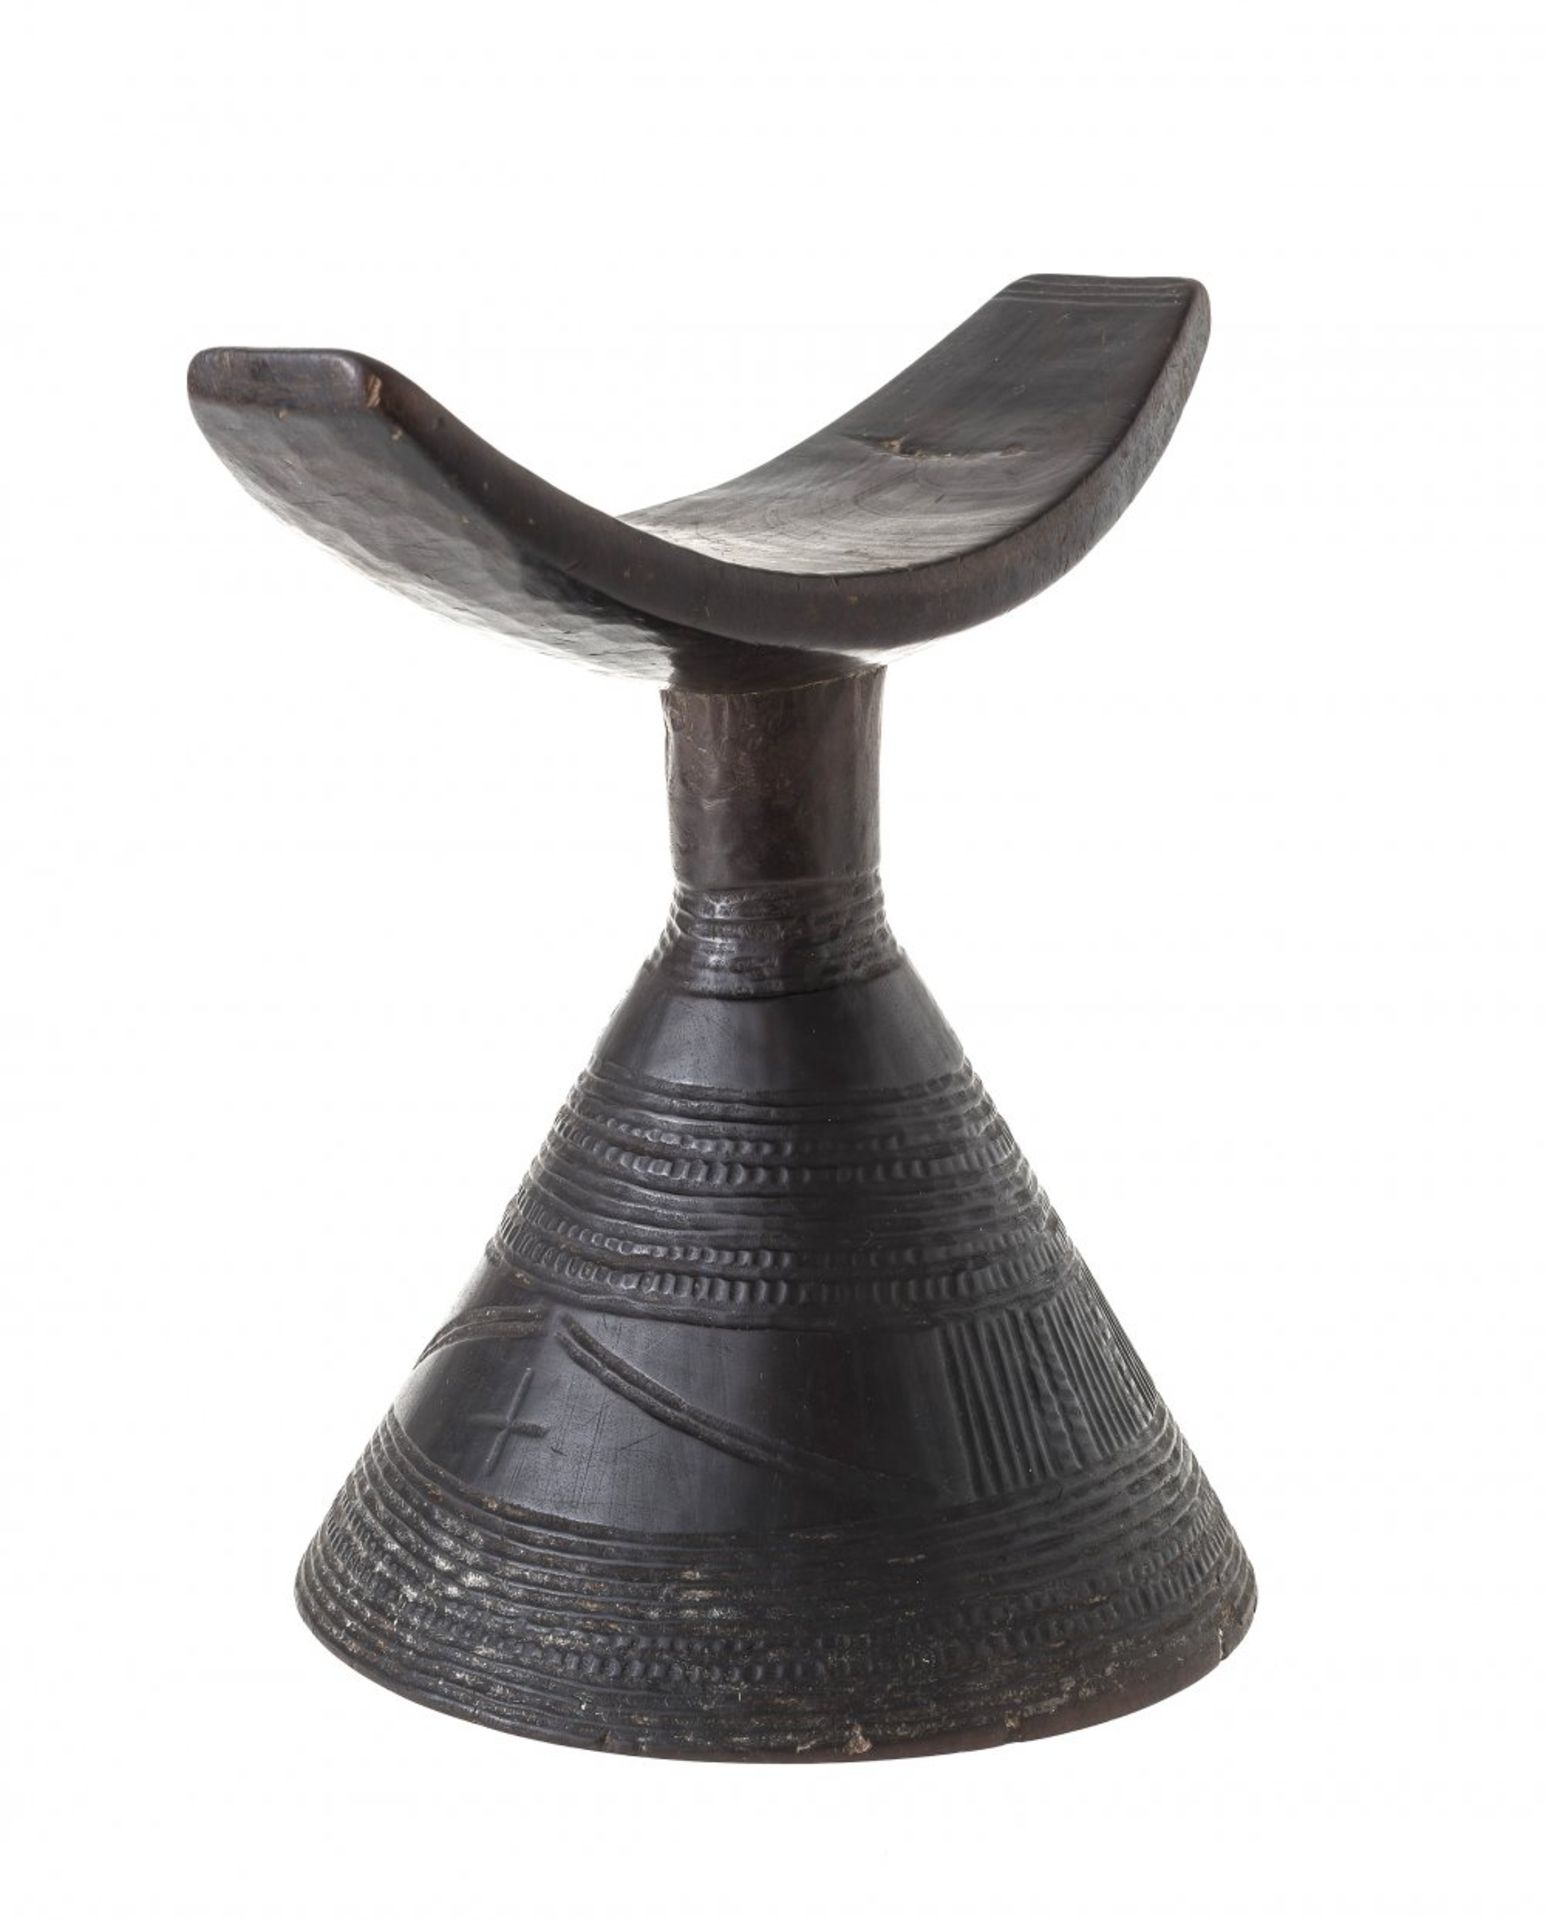 NackenstützeAmhara, Äthiopien. Holz, fein beschnitzt. H. 16 cm.A headrestAmhara, Ethiopia, H. 16